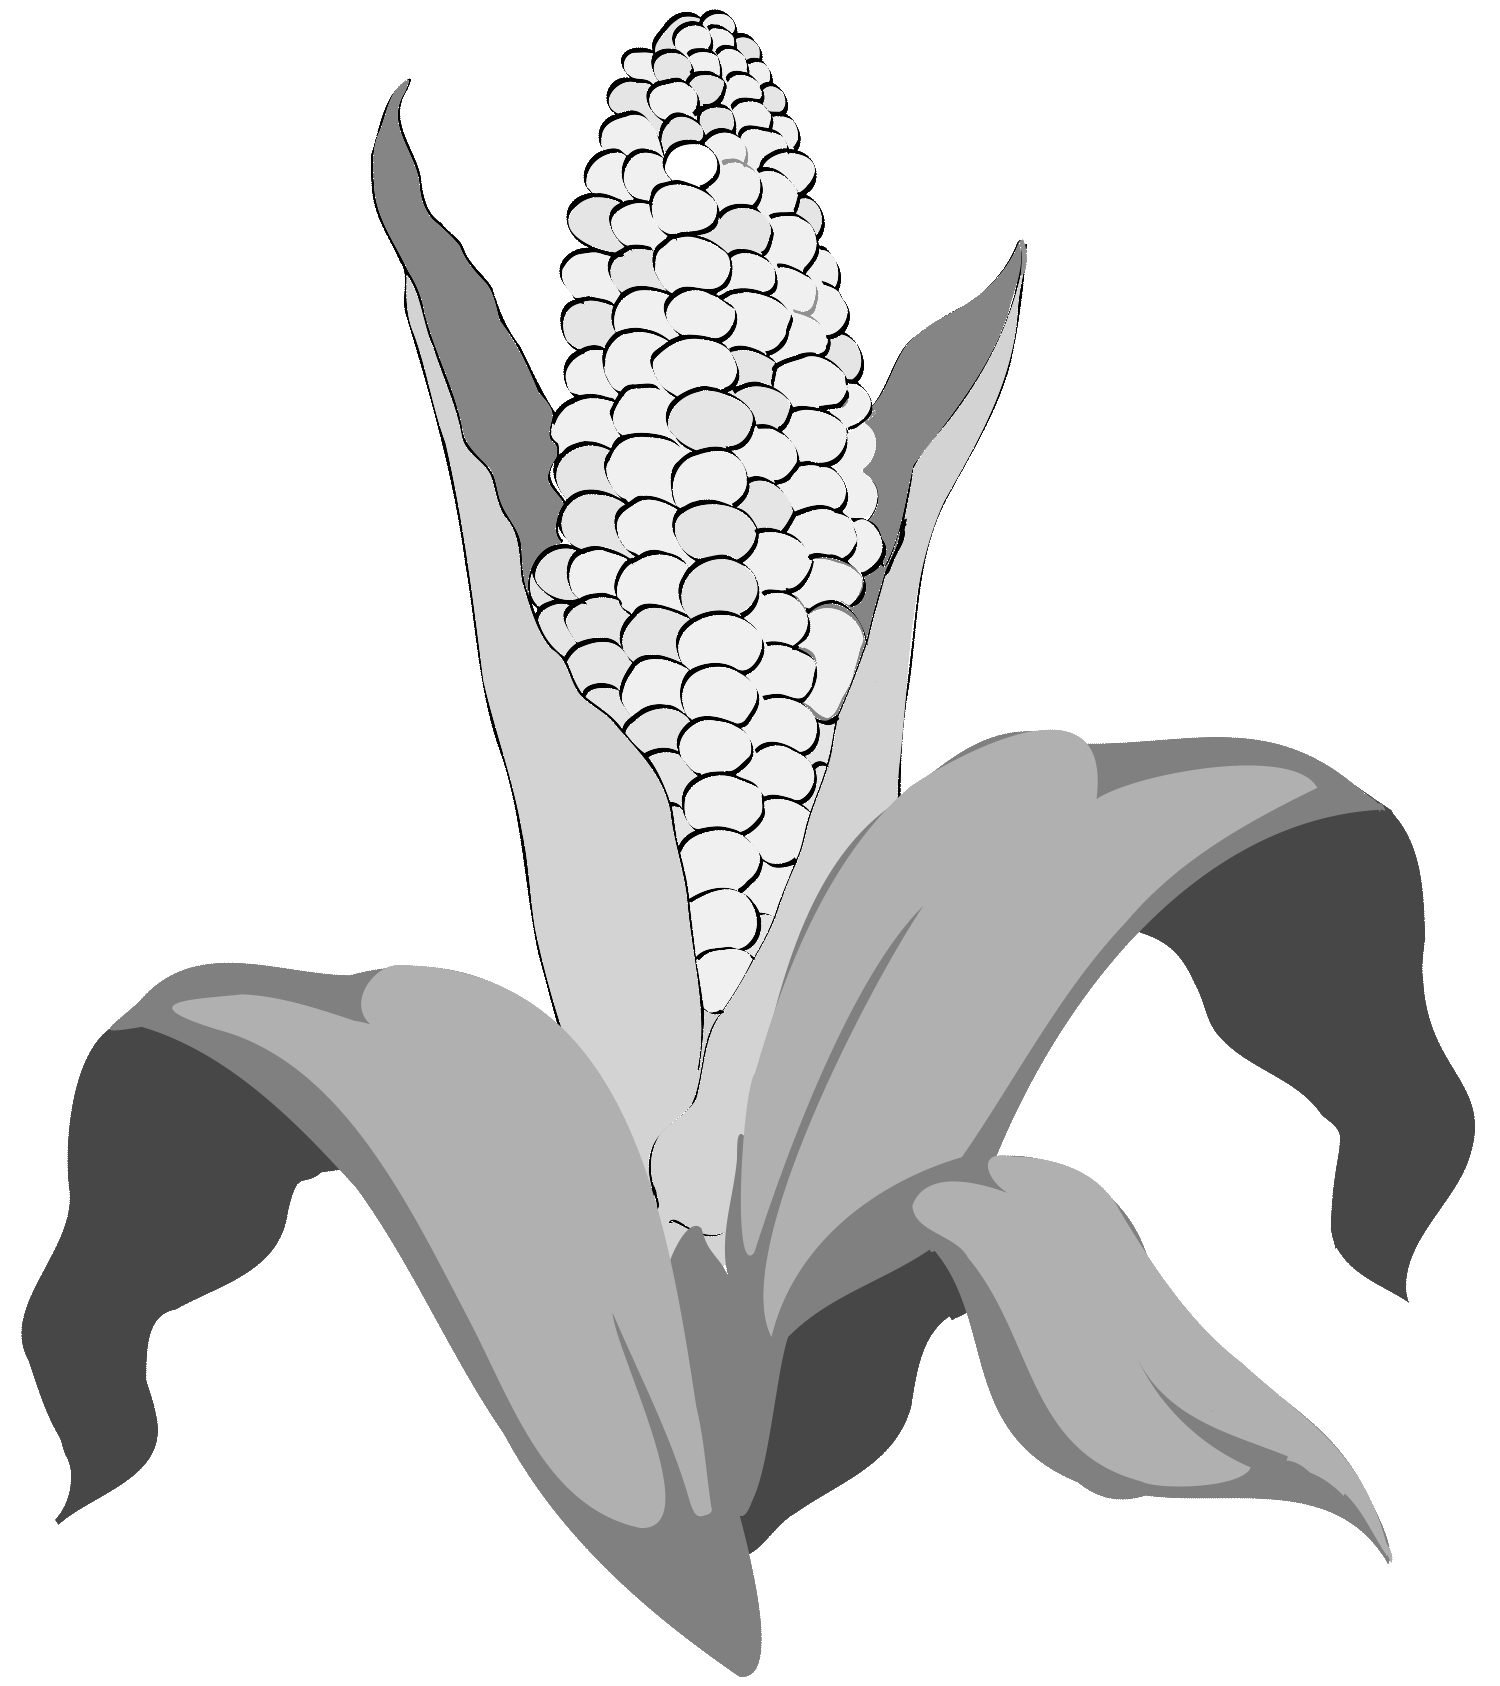 L'illustration présente une épis de maïs, qui symbolise l'agro-industrie, associée aux principes du Lean Thinking appliqués au secteur agricole. L'illustration a été créée par Nêio Mustafa, illustrateur.